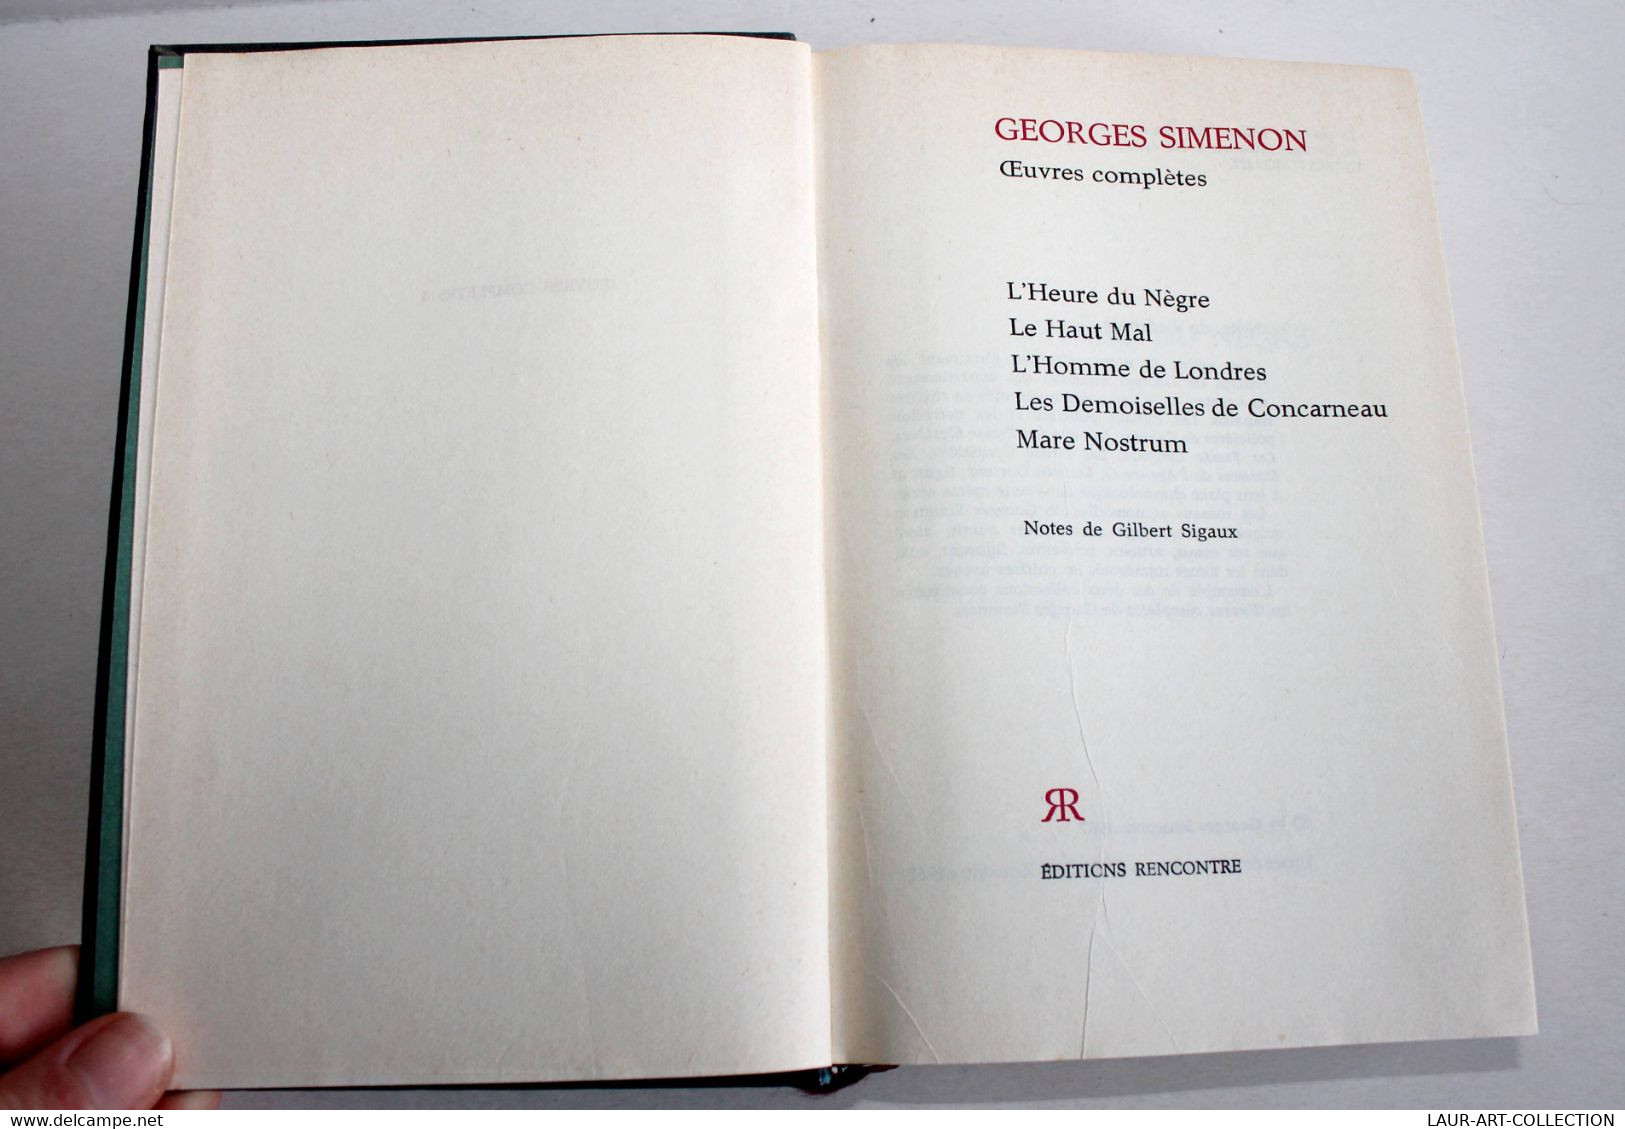 GEORGES SIMENON - OEUVRES COMPLETES - N°4 L'HEURE DU NEGRE, HAUT MAL, H. LONDRES / ANCIEN LIVRE DE COLLECTION (2301.250) - Simenon